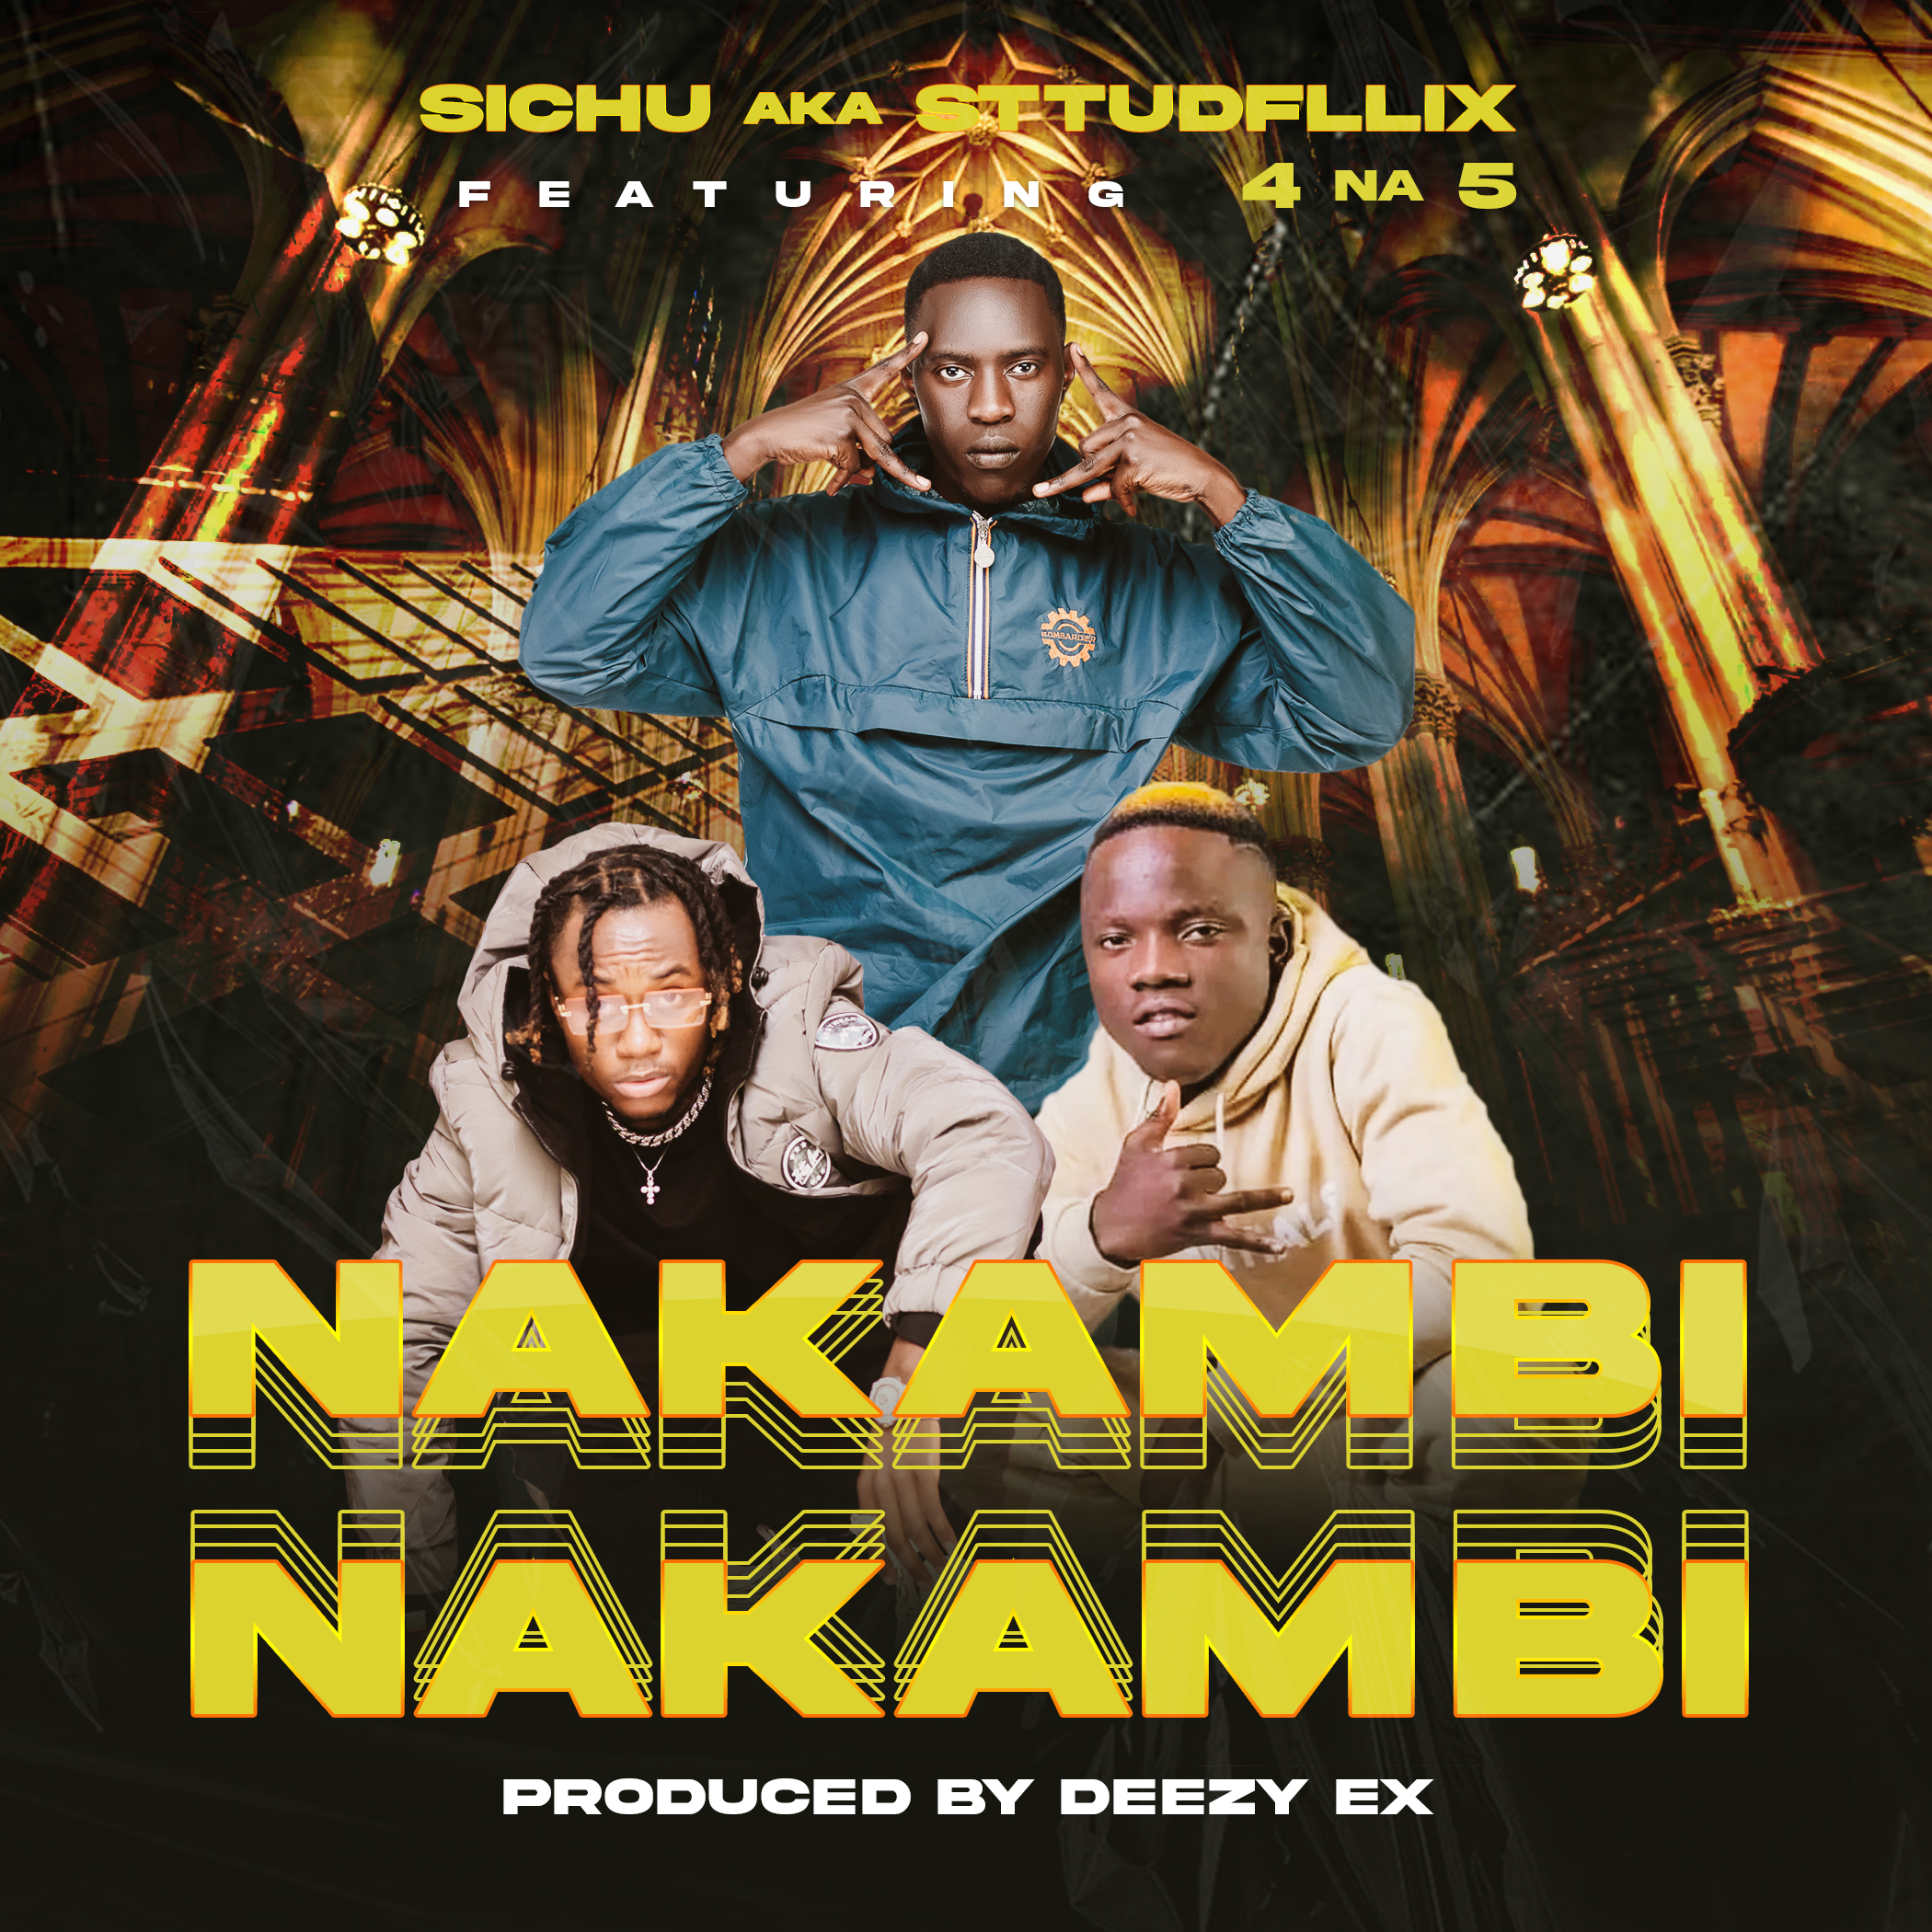 Sichu Aka Sttudfllix Ft 4 Na 5 - Nakambi Nakambi (Prod. Deezy Ex)